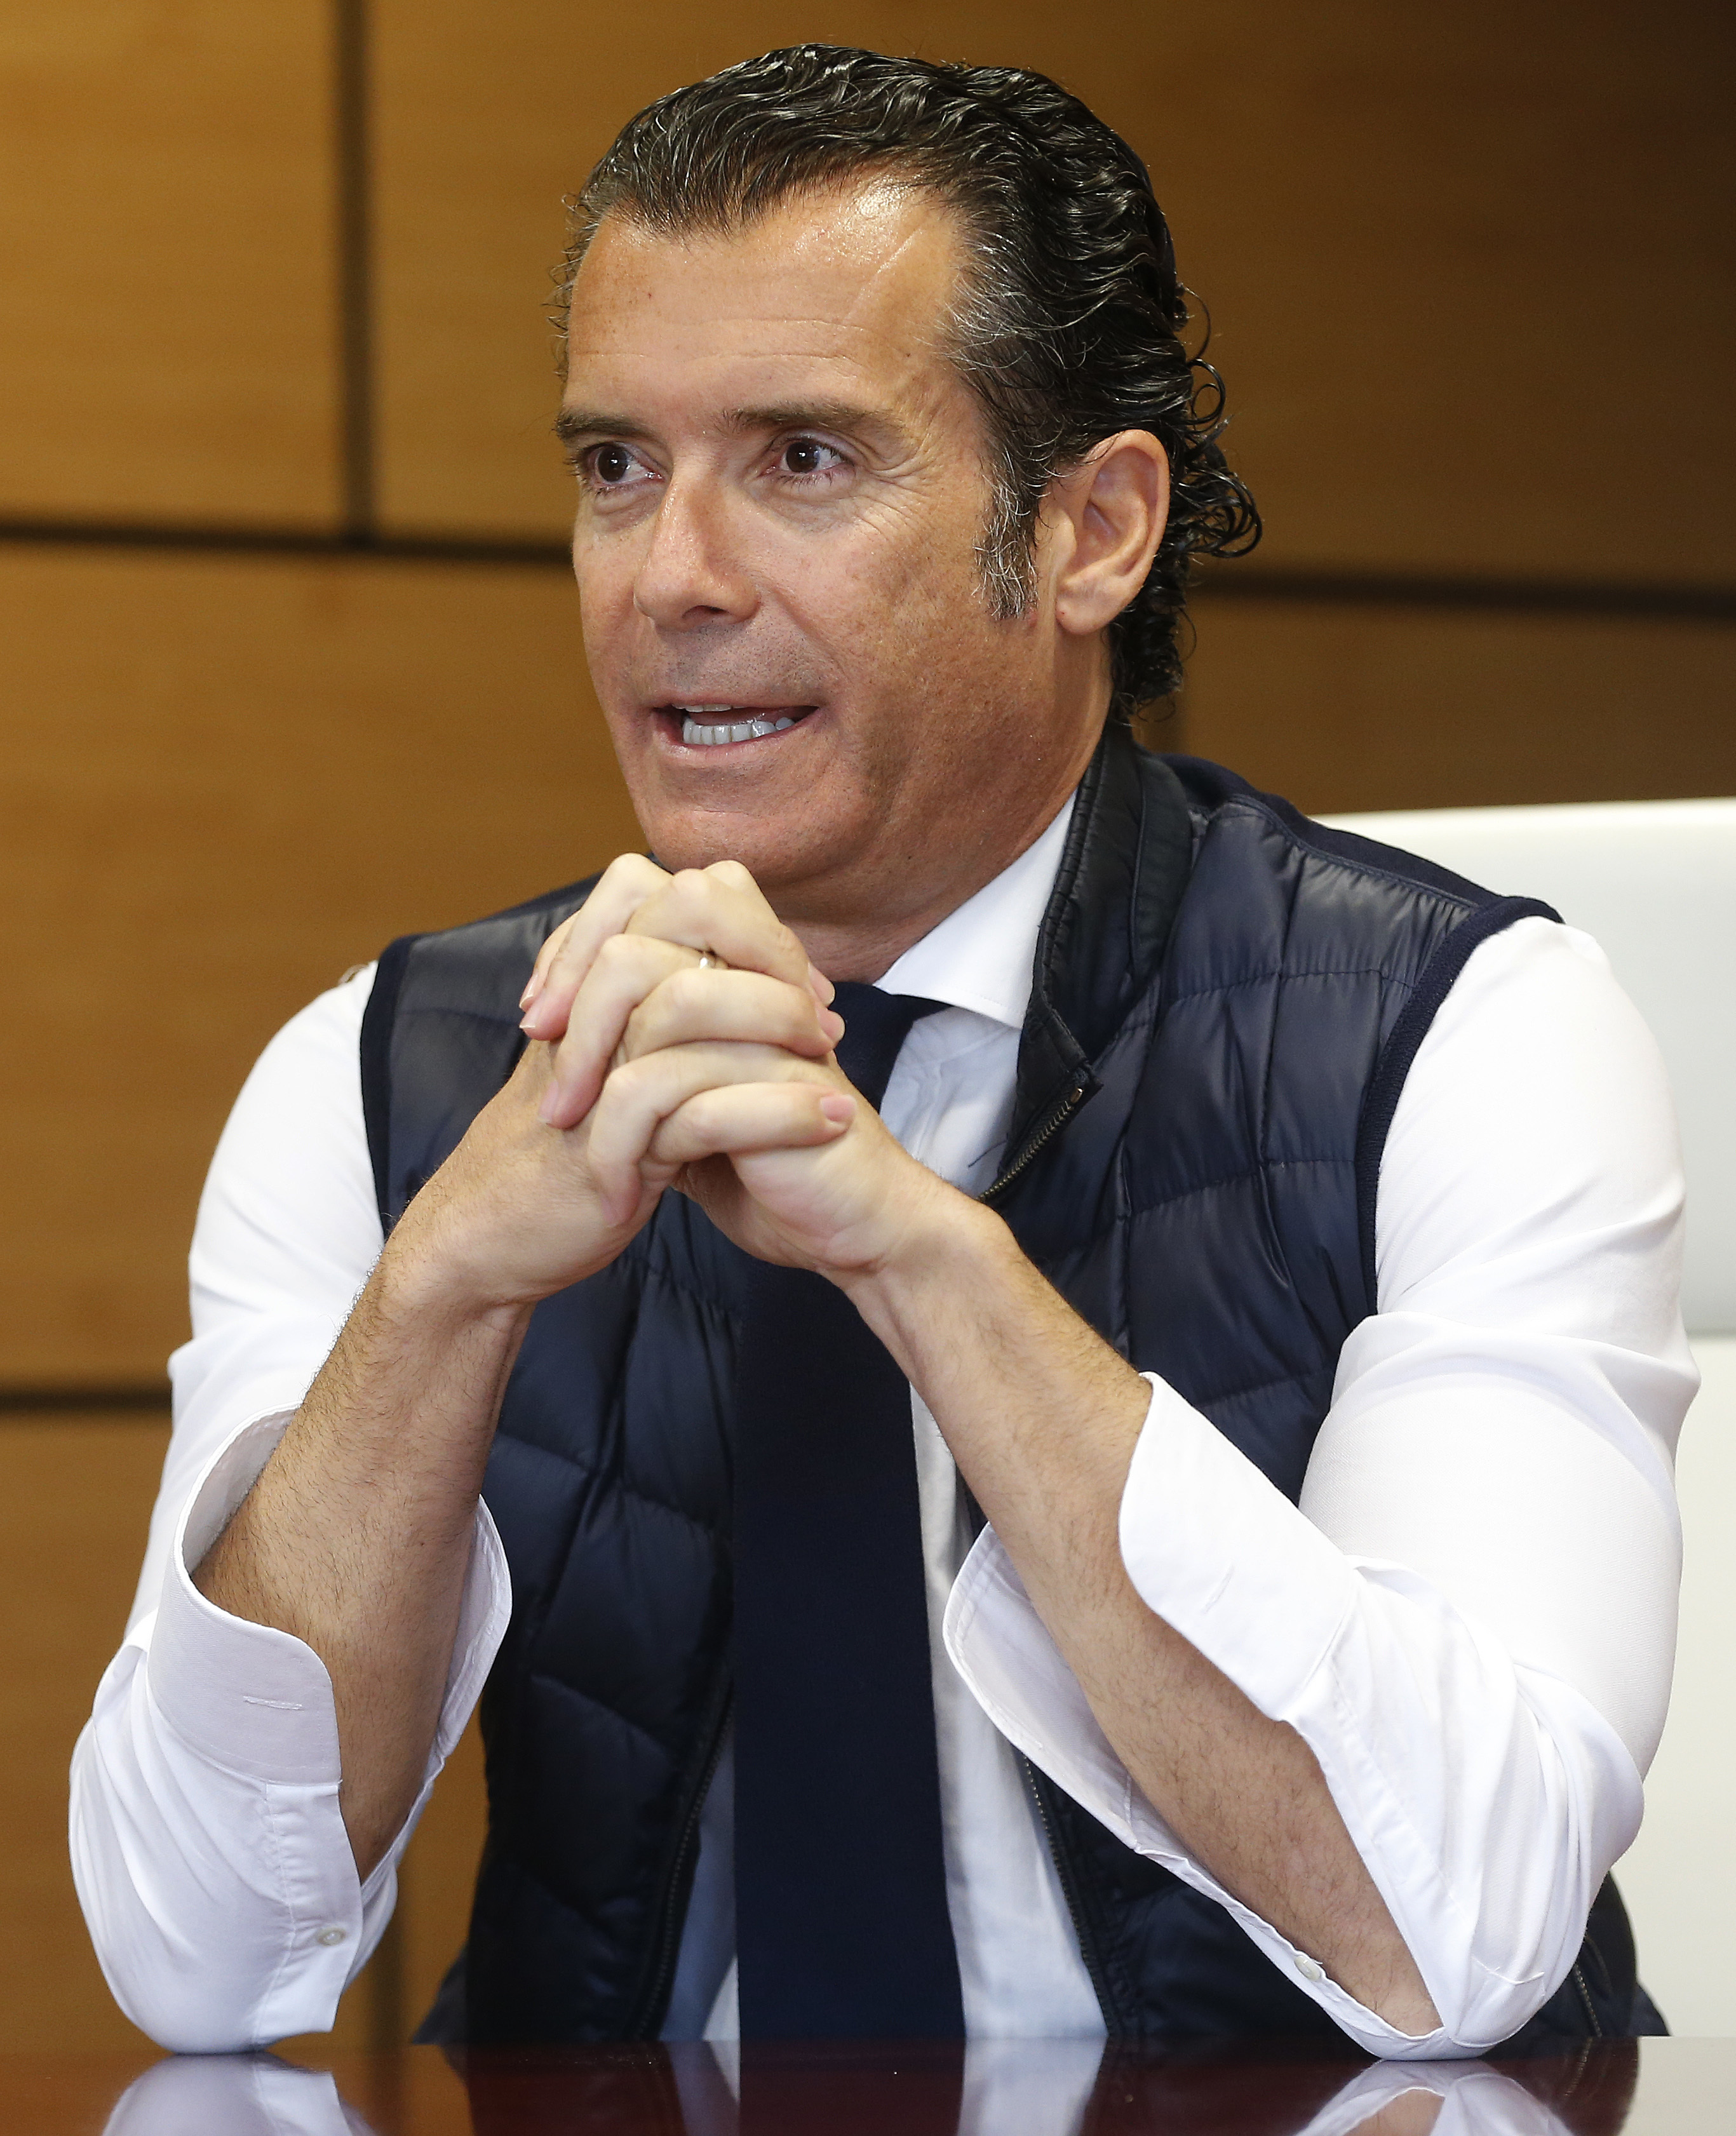 El director general de Nunsys, Paco Gaviln